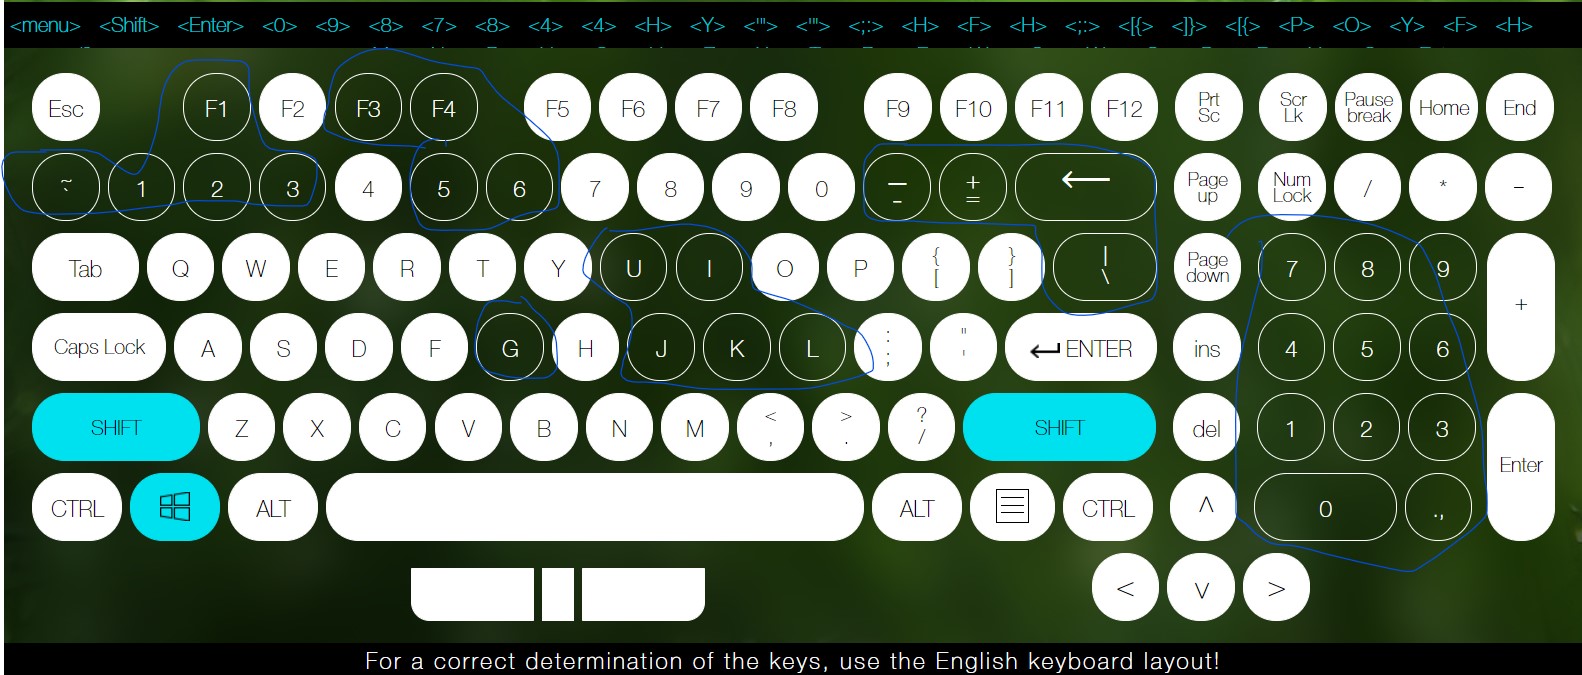 Certain keys on keyboard not working d9de59f4-9ca3-402f-883e-f3ec67df3081?upload=true.jpg